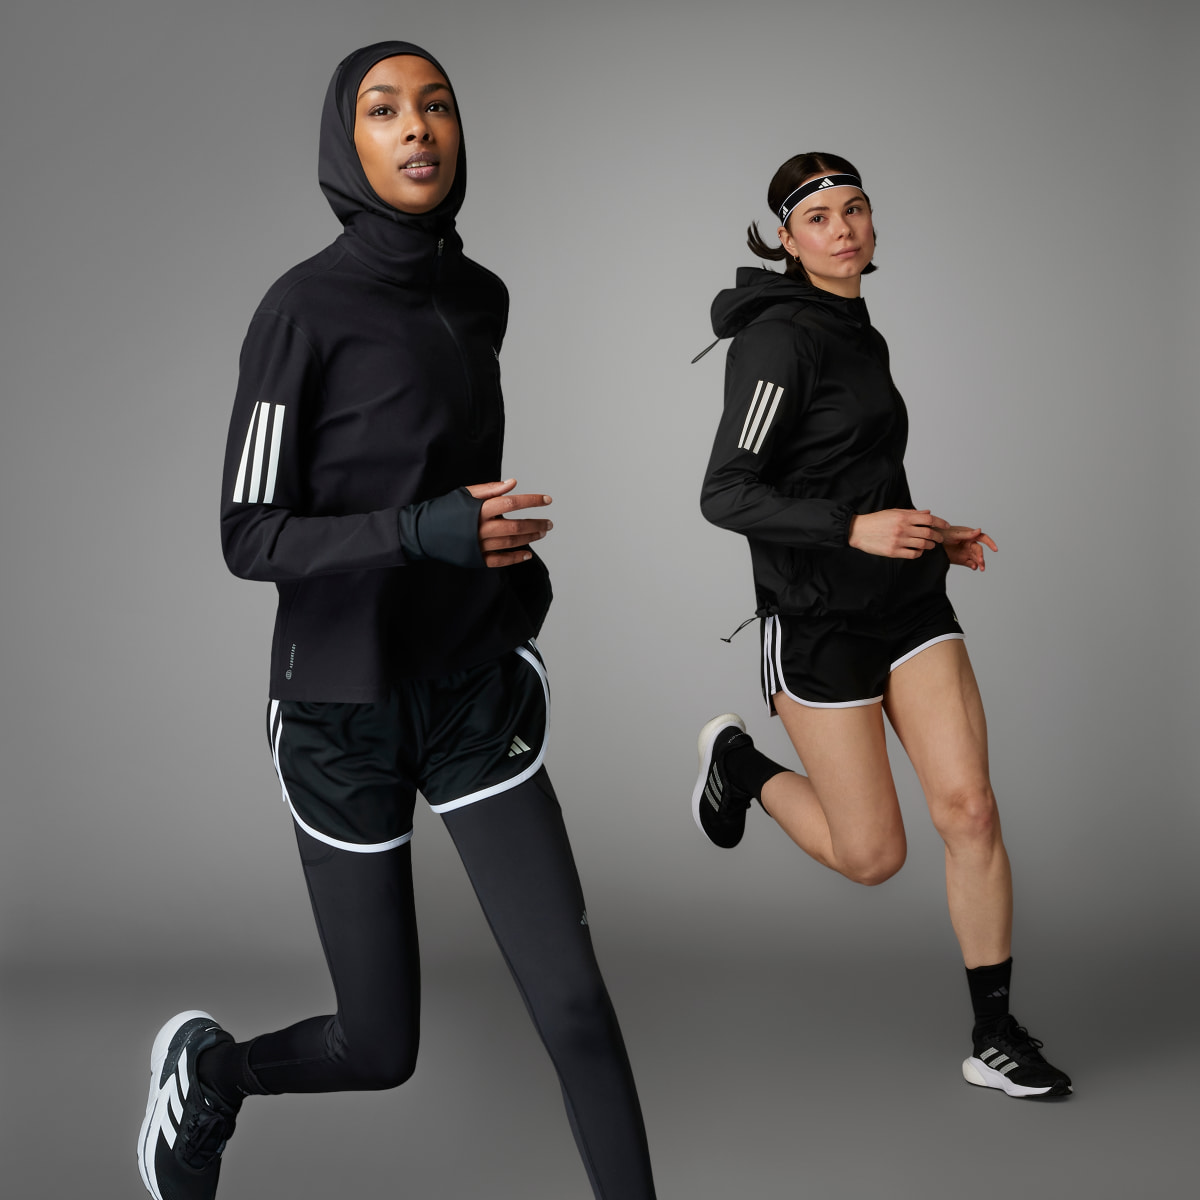 Adidas Shorts Own the Run. 5